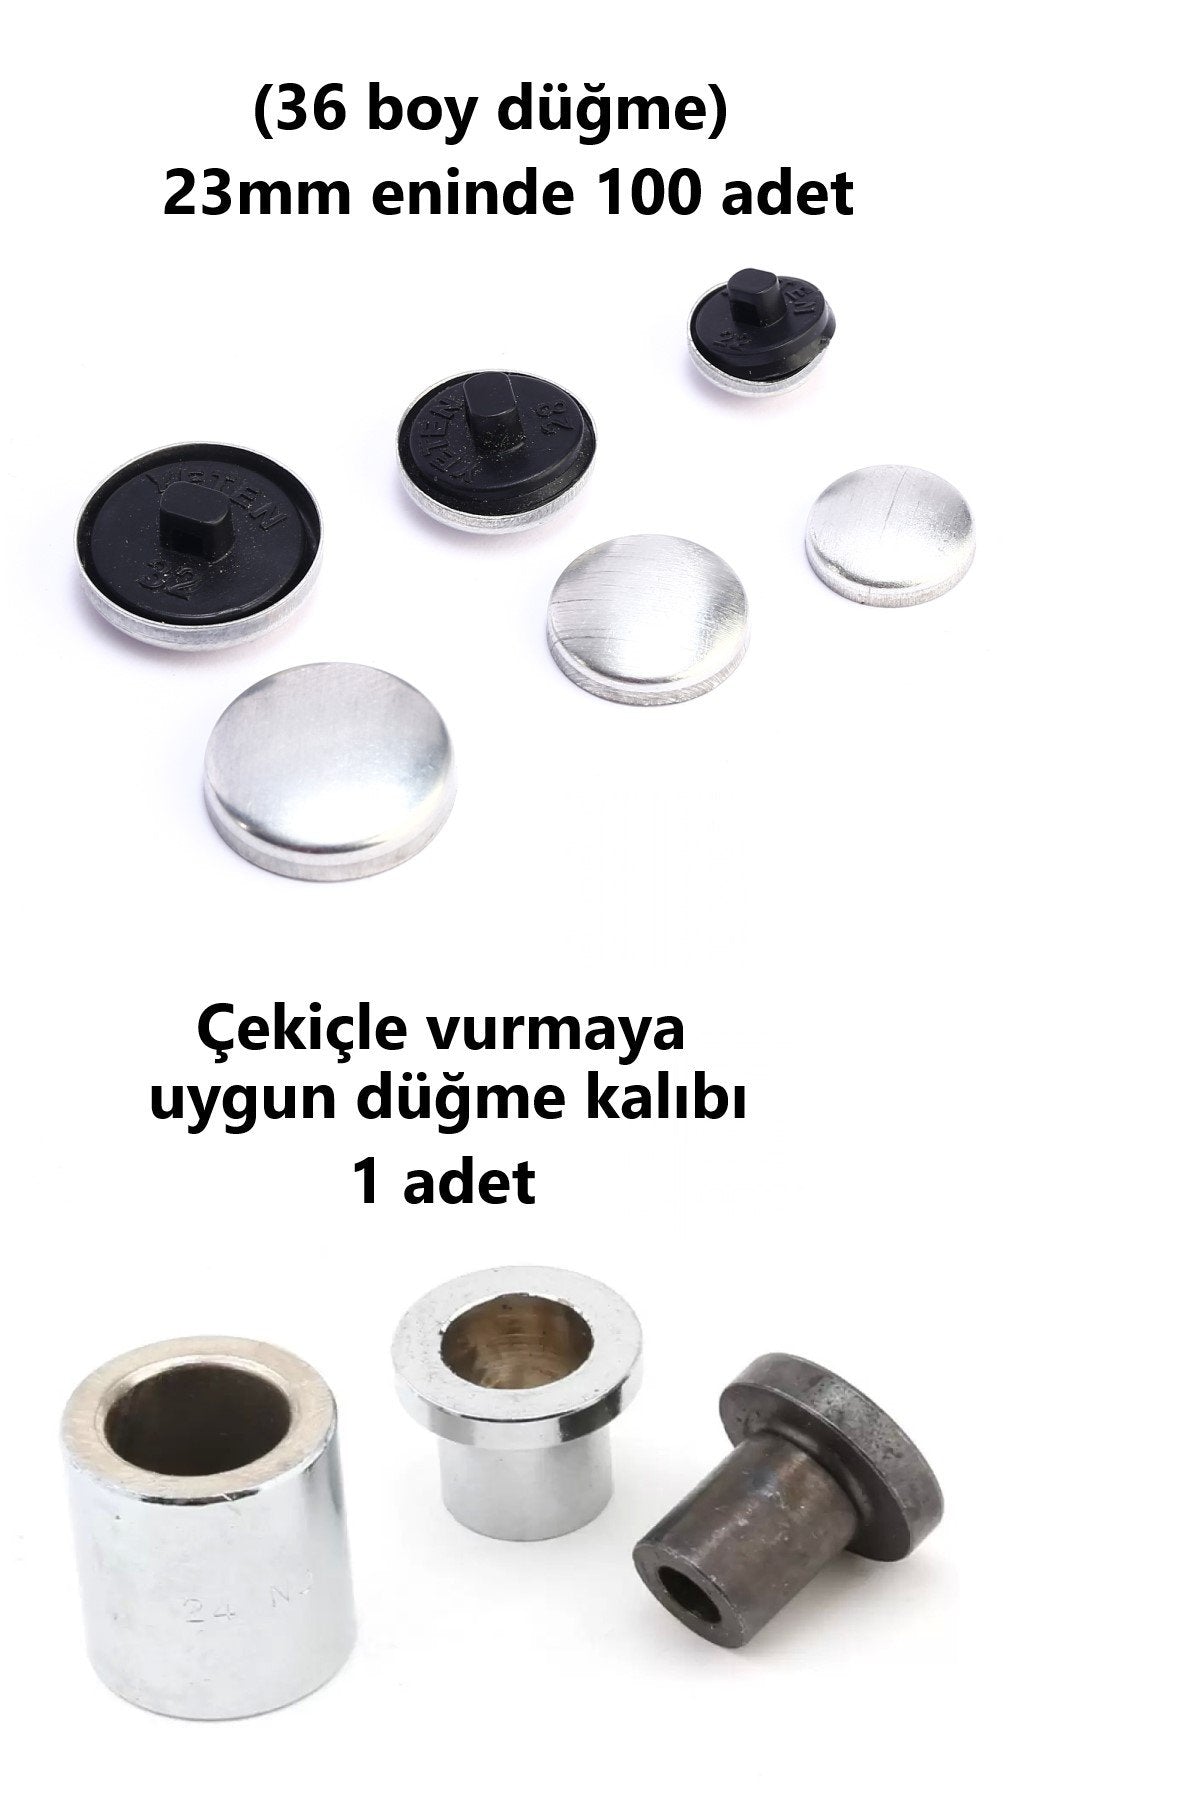 Kumaş Kaplama Düğme Yapım Seti - (36 Boy) 100 adet Düğme ve Kalıp  (24mm)